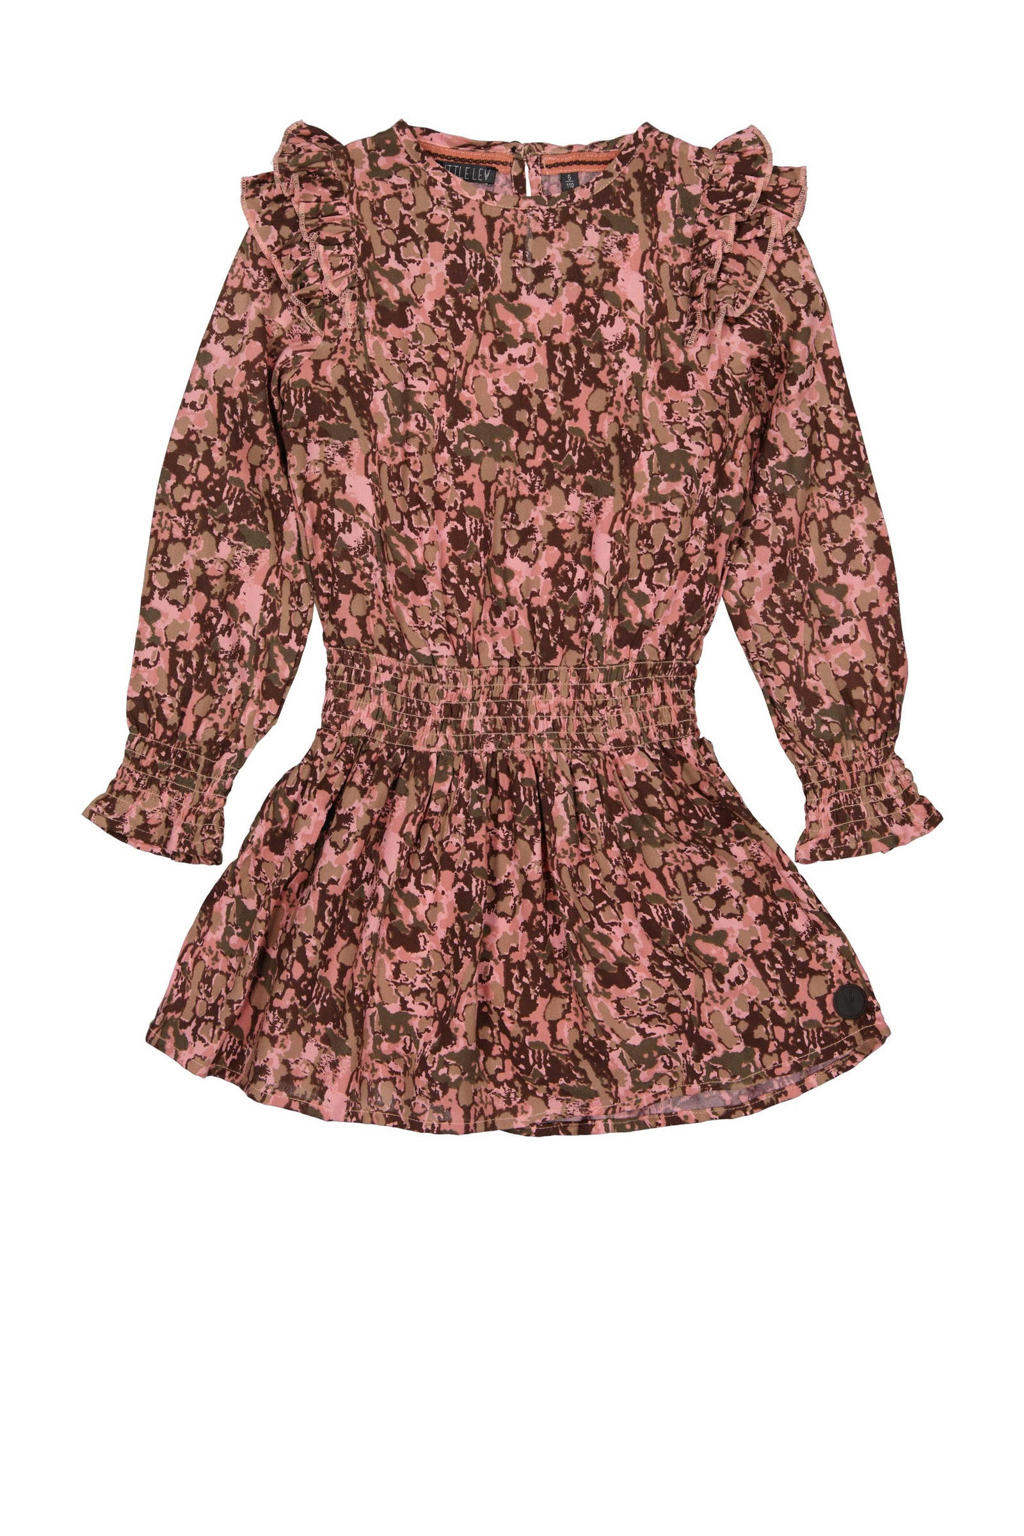 LEVV jurk Babet met all over print en ruches roze/bruin